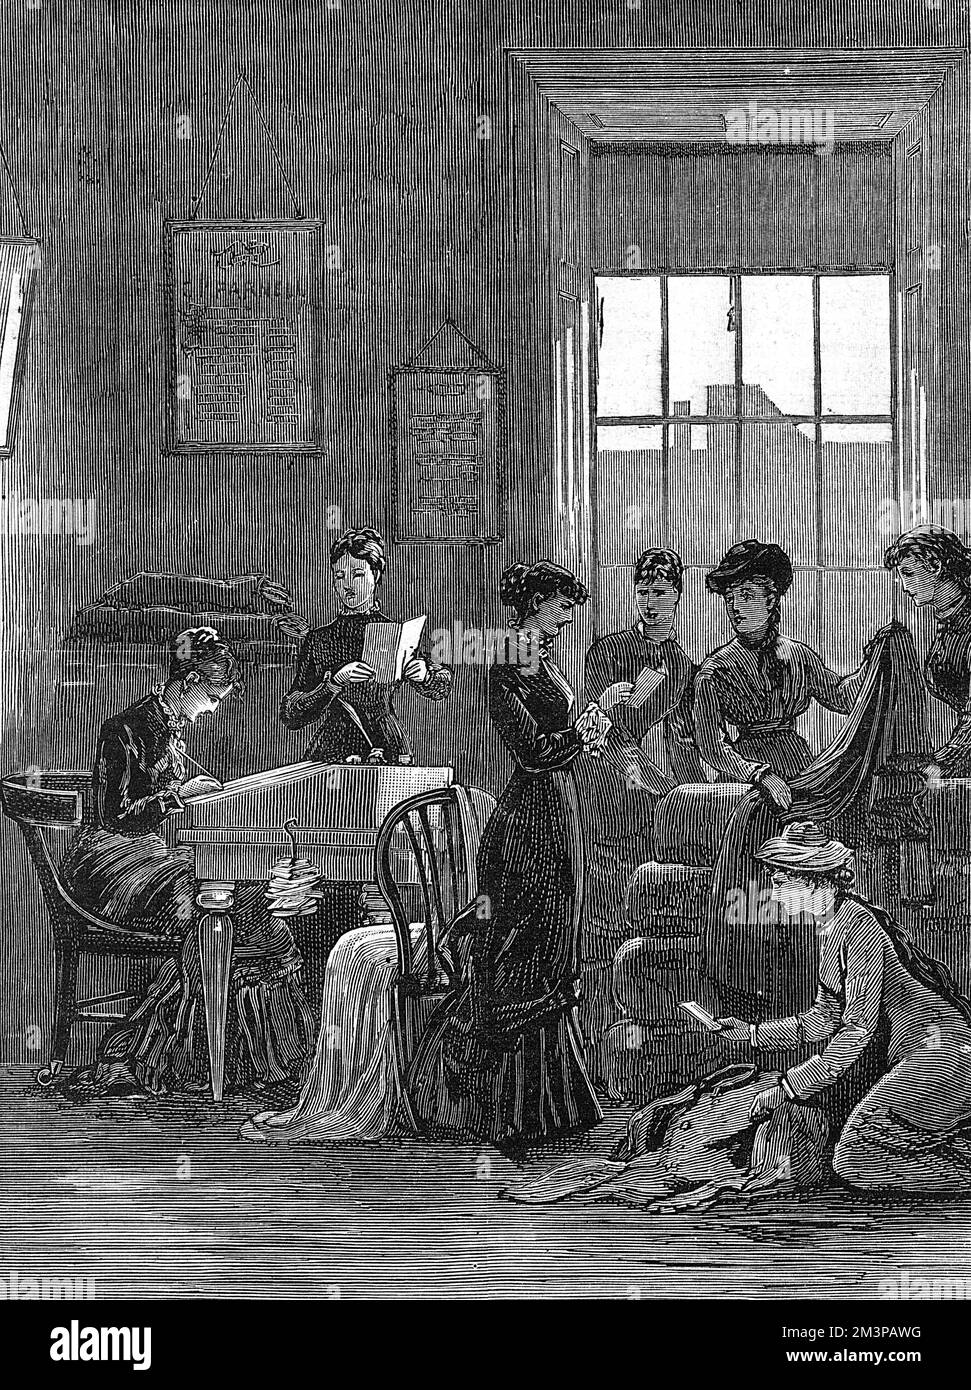 Die Lady Land Leaguers bei der Arbeit: Frauen der Irish Land League wurden 1881 in ihrem Büro in Dublin fotografiert. Während ihre männlichen Kollegen inhaftiert wurden, setzten die Frauen die Arbeit der Liga fort. Hier arbeiten Frauen an der Überholung von Kleidung, die für zwangsgeräumt Bauern und für die Familien inhaftierter Verdächtiger gedacht ist. Bei einem Treffen versprachen diese patriotischen Damen, nie einen Engländer zu heiraten und niemals einem Polizisten einen Drink zu geben. Datum: 1881 Stockfoto